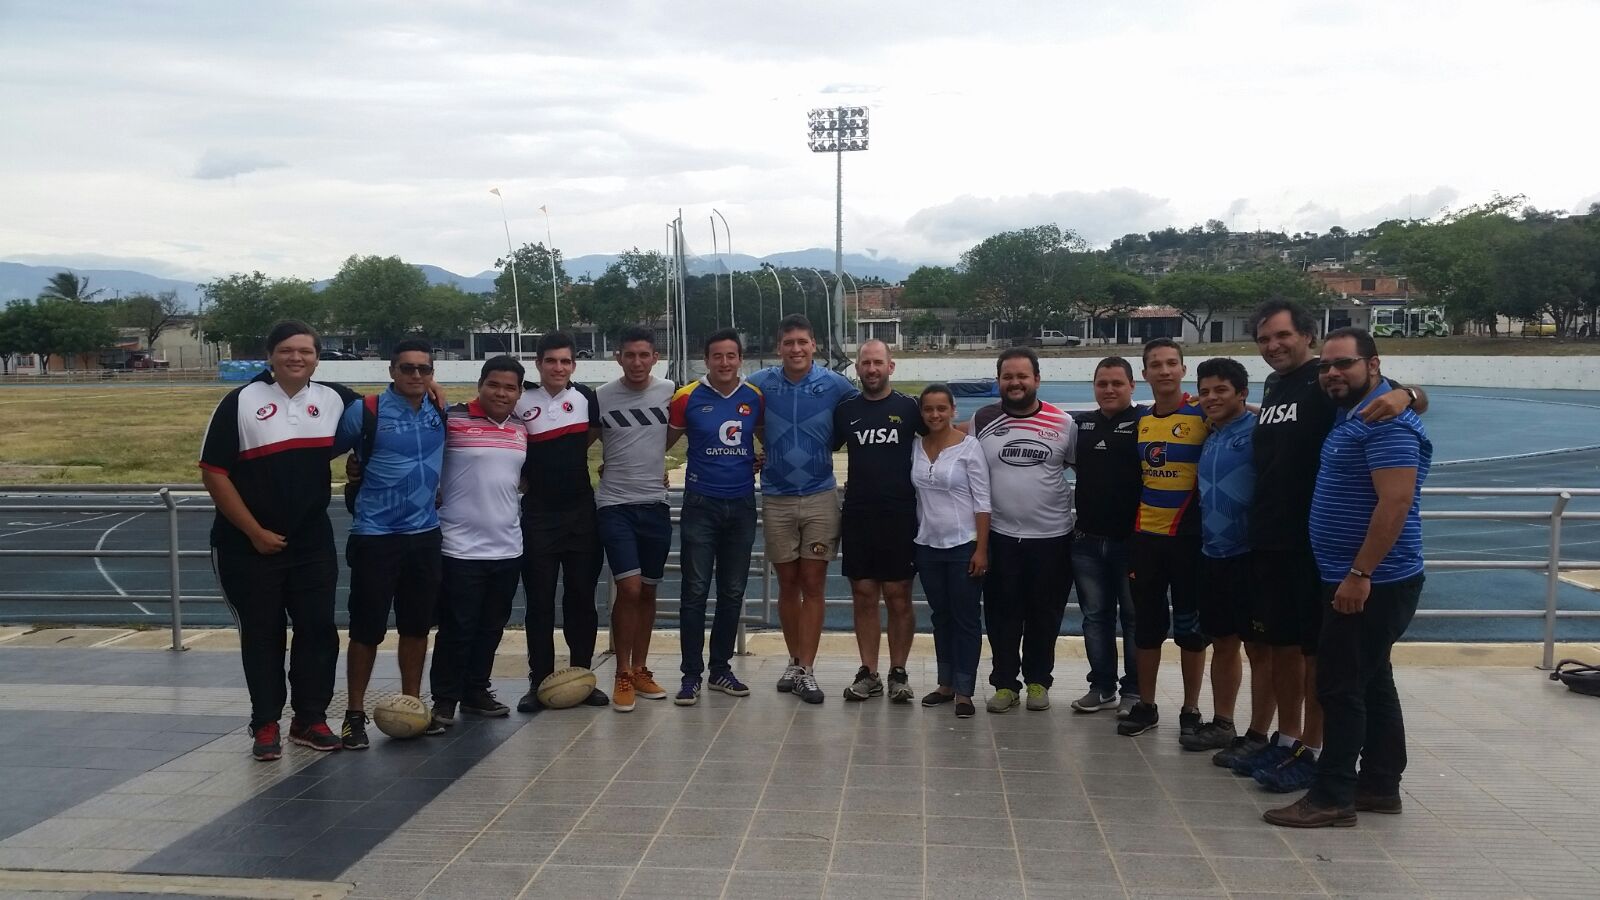 Niños, jóvenes y entrenadores de rugby de Cúcuta, Los Patios y Zulia recibe la visita de dos entrenadores argentinos que del 17 al 21 de diciembre liderarán actividades de promoción del rugby y entrenamientos especializados y dictarán capacitaciones a entrenadores.